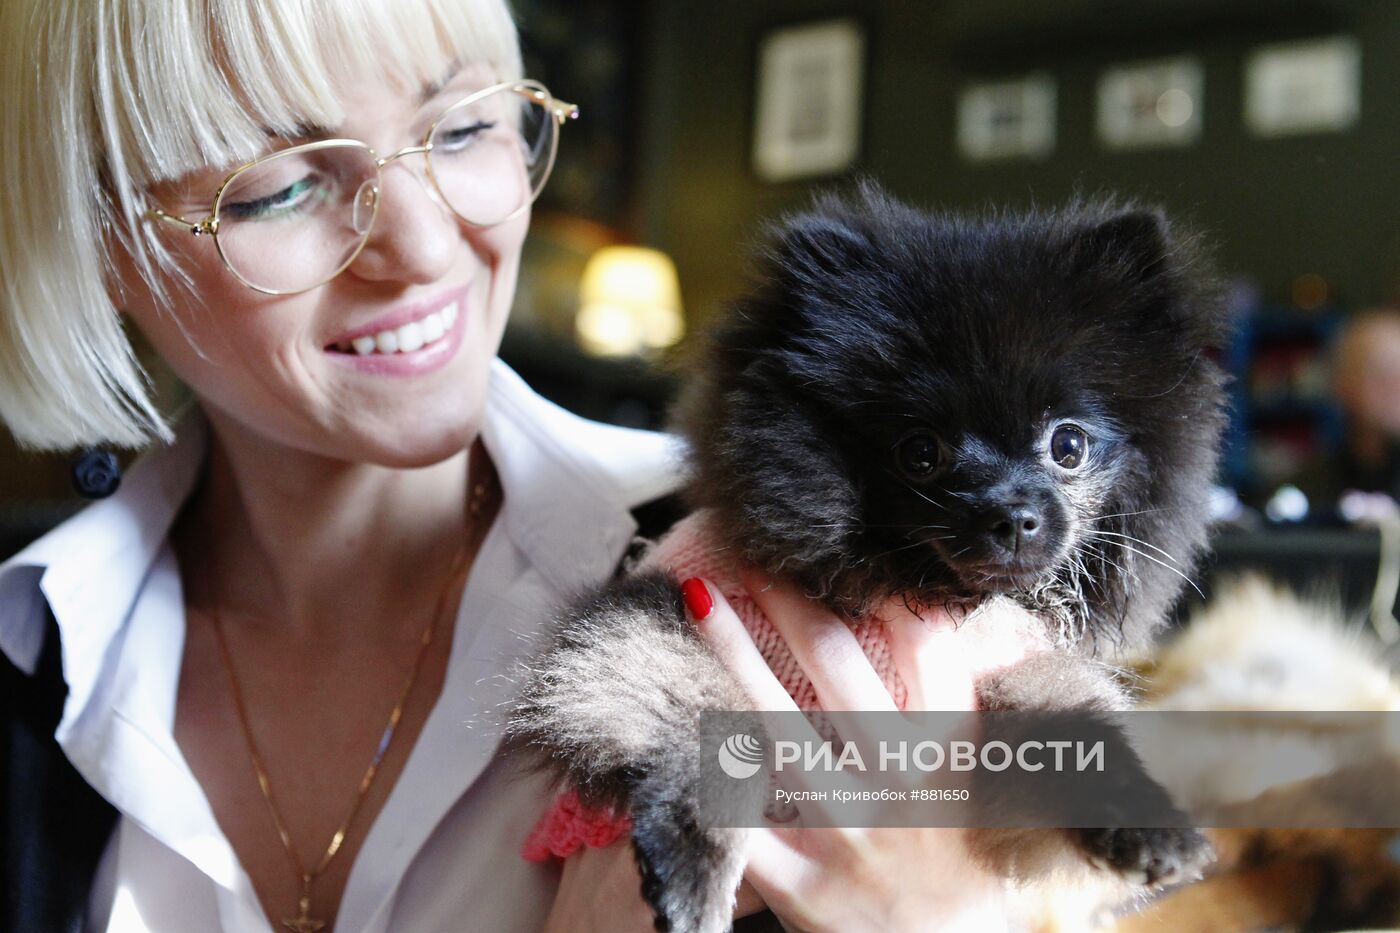 Работа груминг салона для собак в Москве